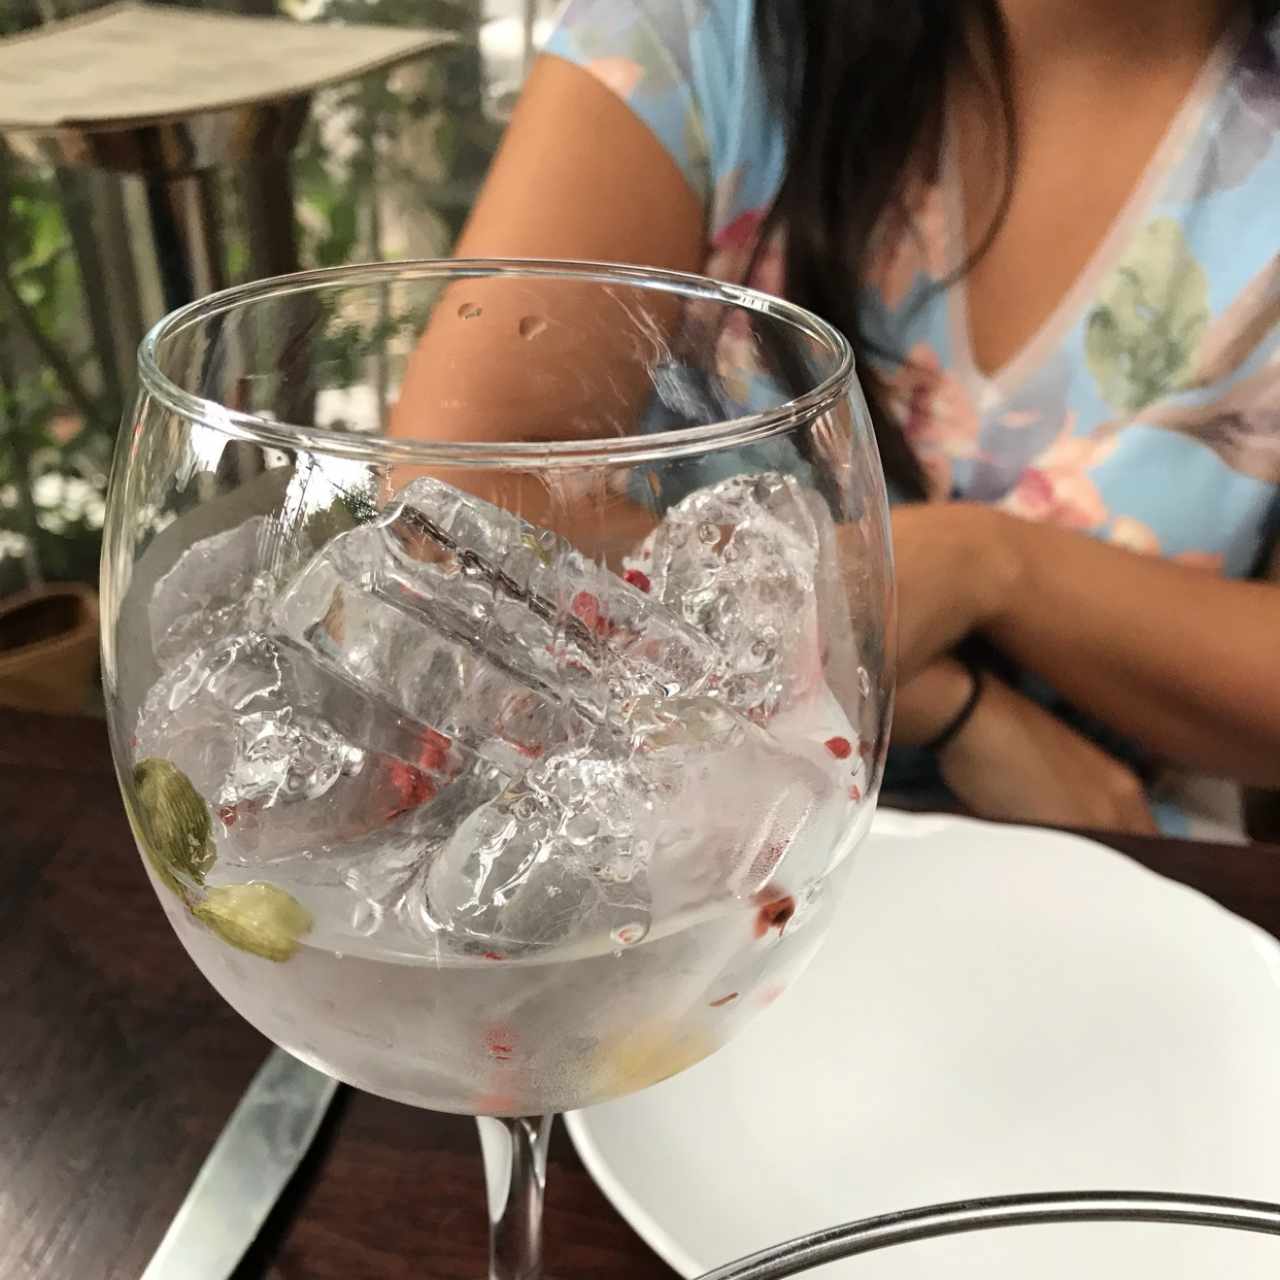 gin 